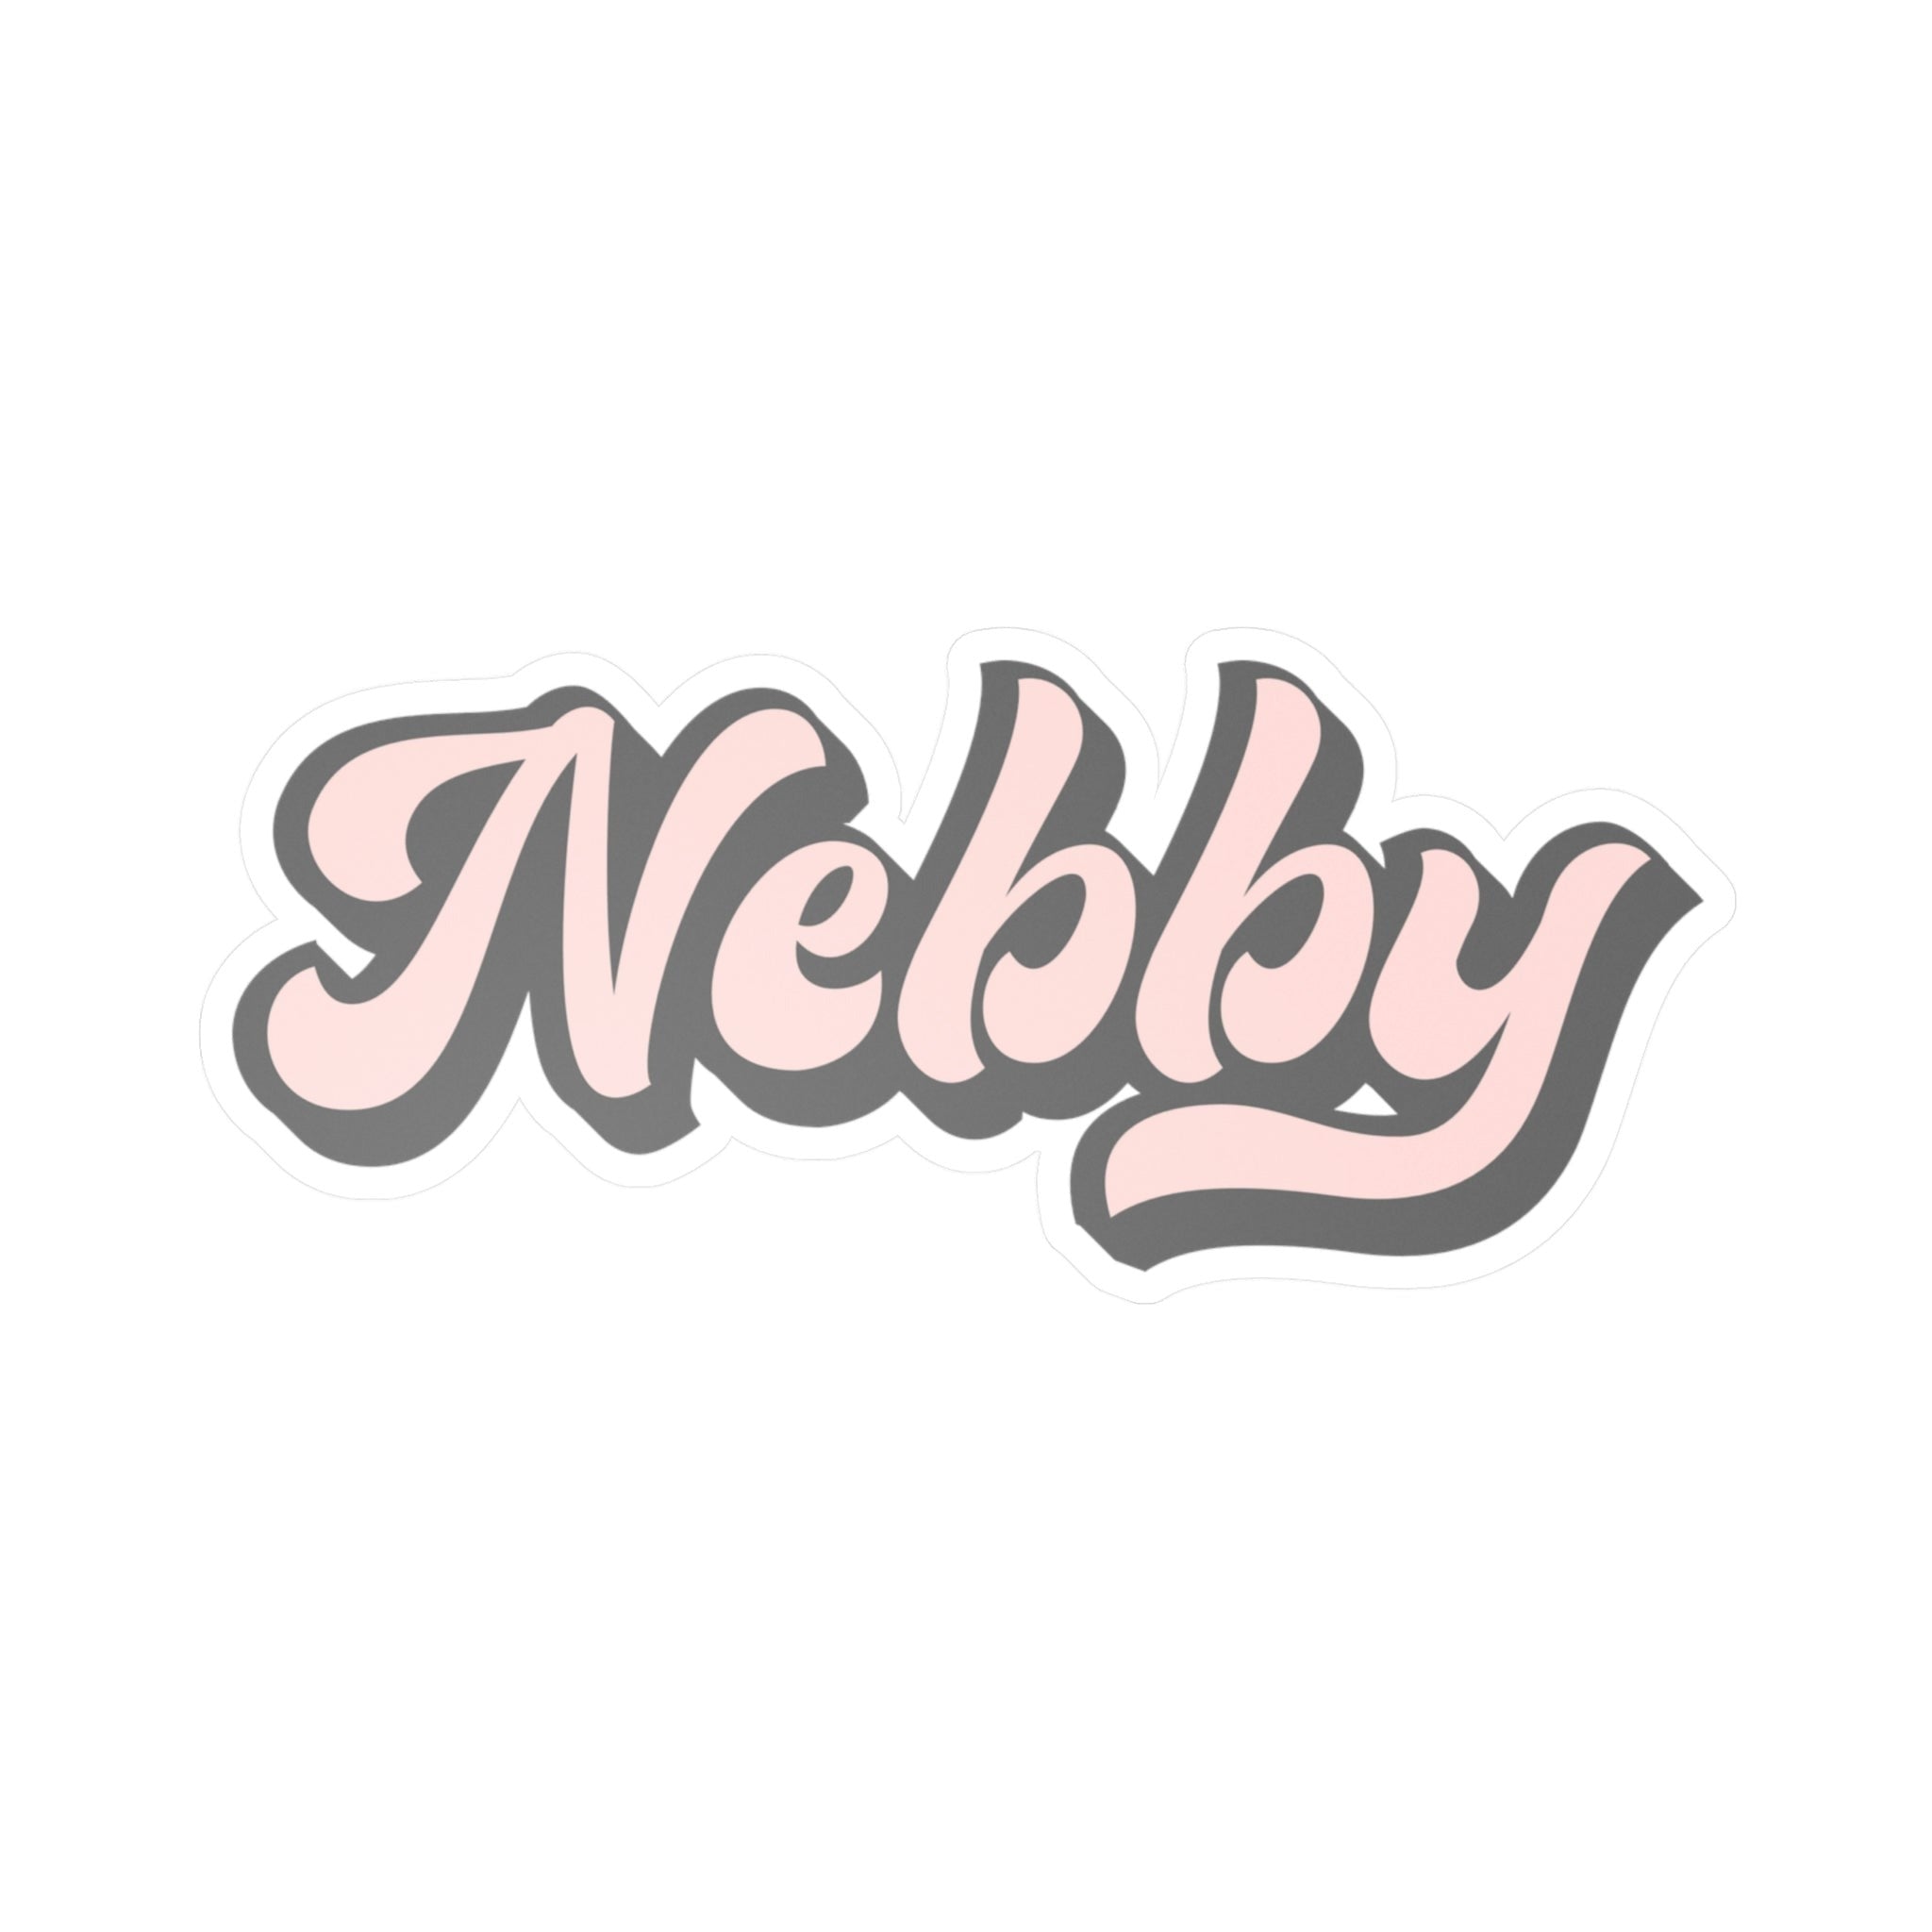 Nebby - Kiss-Cut Vinyl Decals - Yinzylvania